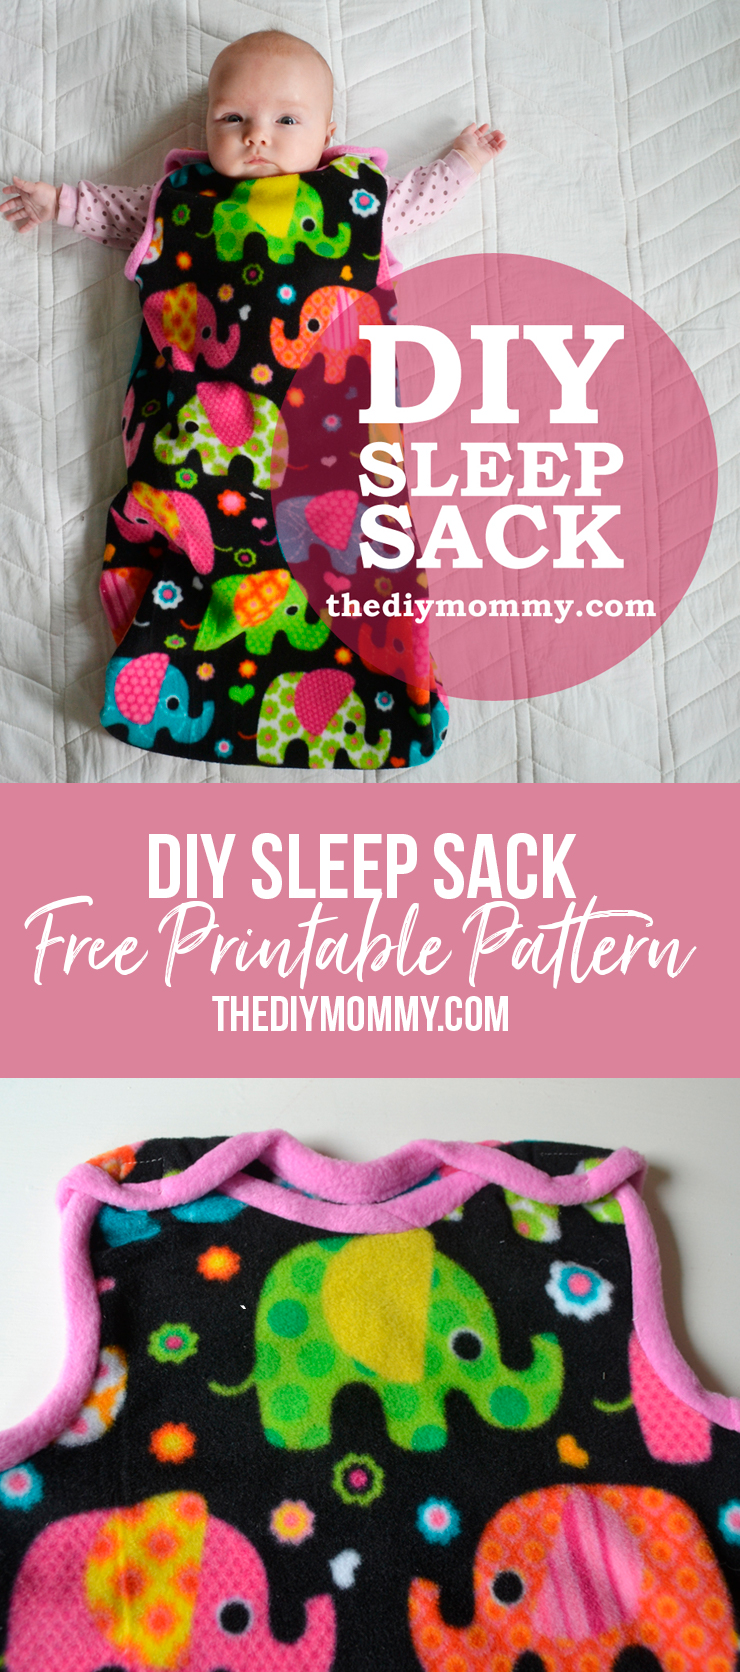 Sew an Easy Baby Sleep Sack | The DIY Mommy - Sew an Easy Baby Sleep Sack | The DIY Mommy -   17 diy Easy baby ideas